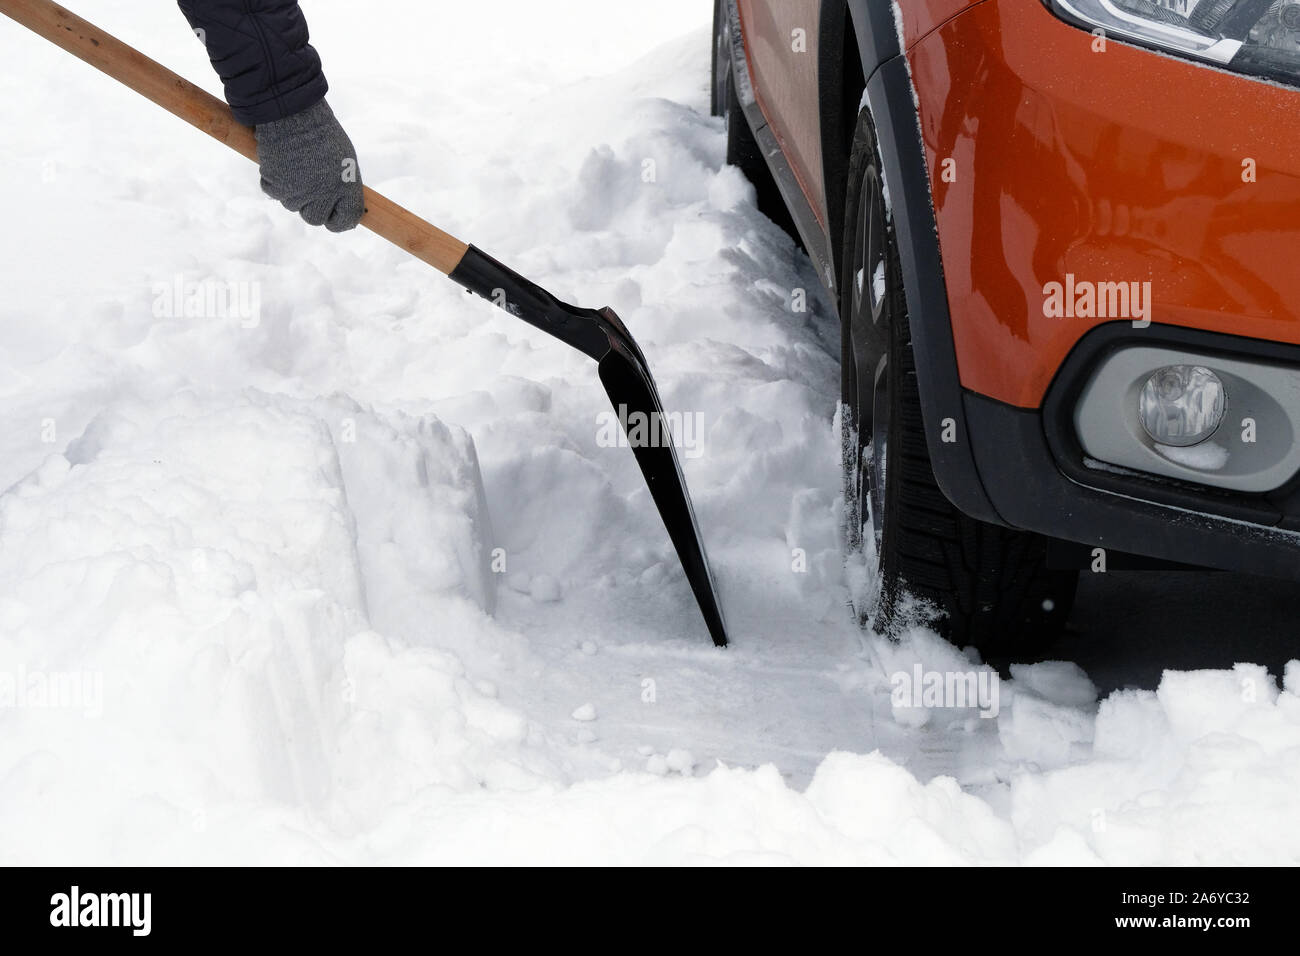 Mann mit Schaufel löscht Schnee rund um Auto auf Parkplatz im Winter nach Schneefall. Schaufel in der Hand. Winter Probleme der Autofahrer. Stockfoto